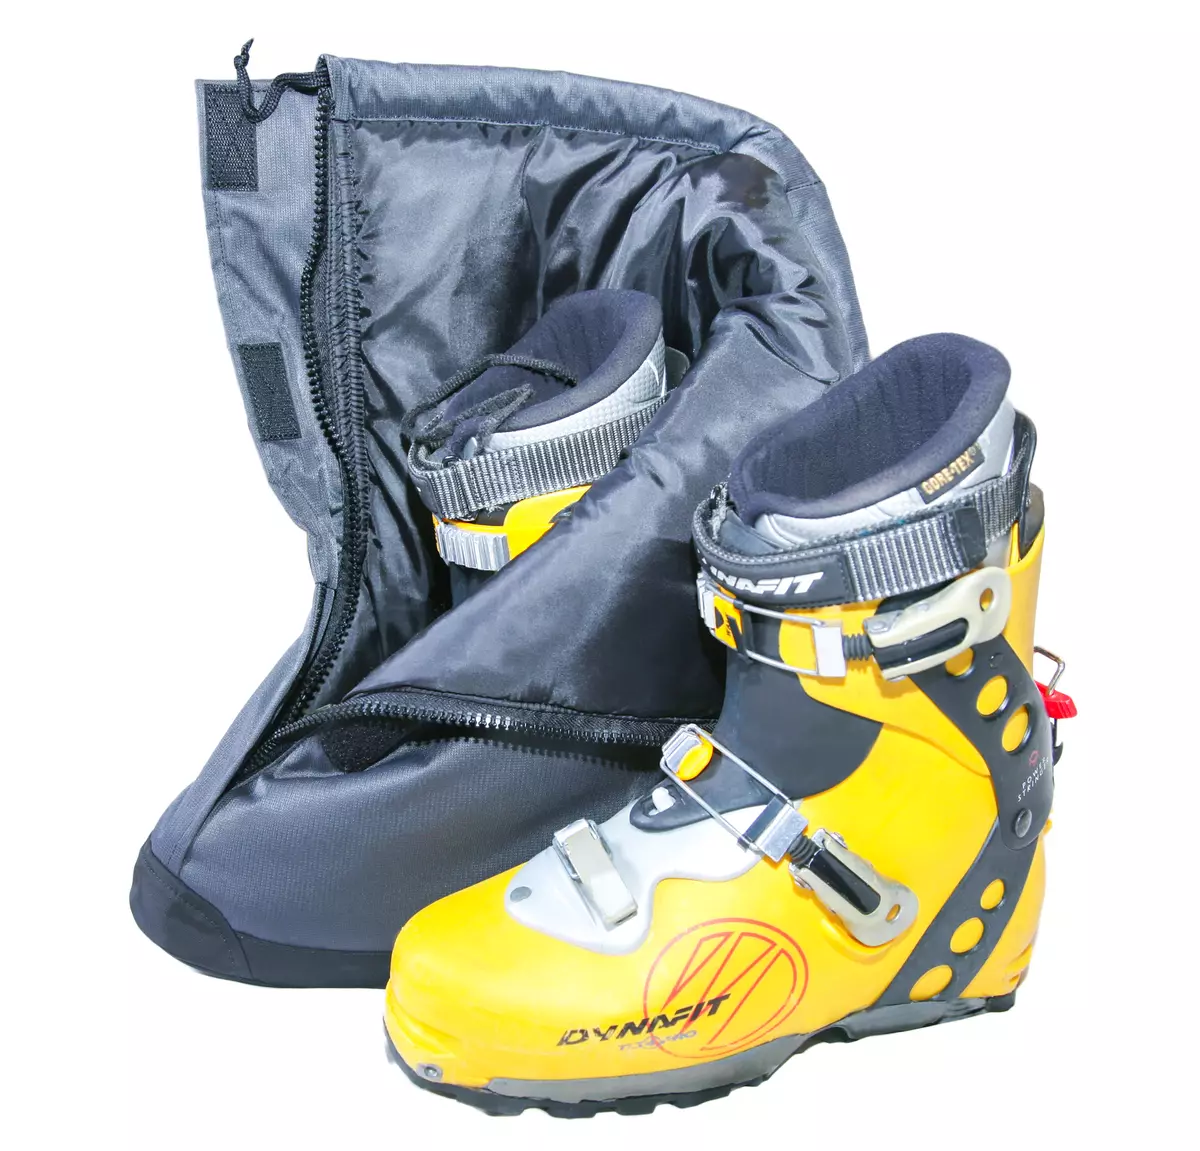 Okładki rozruchu narciarskiego: Neopren i inne pokrowce na buty narciarskie, do nartach i butów w tym samym czasie, model ciepła i samolotu 8373_9